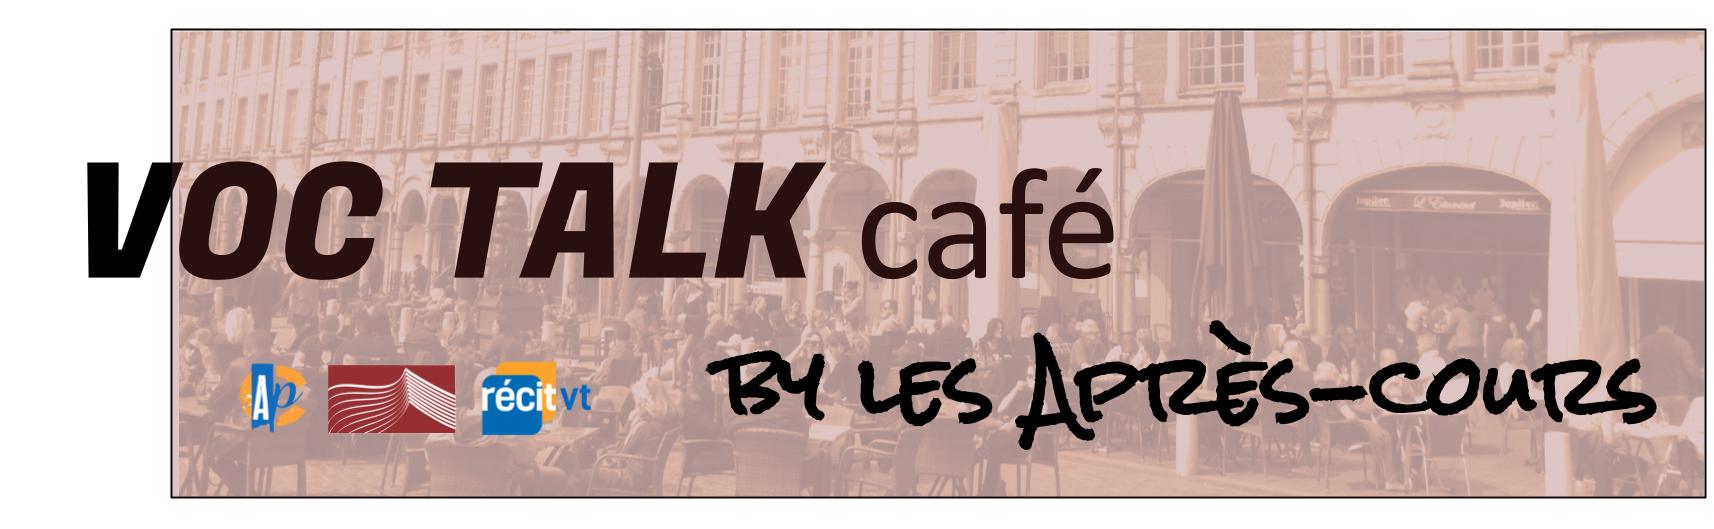 Voc talk café by Après Cours prototype with logos